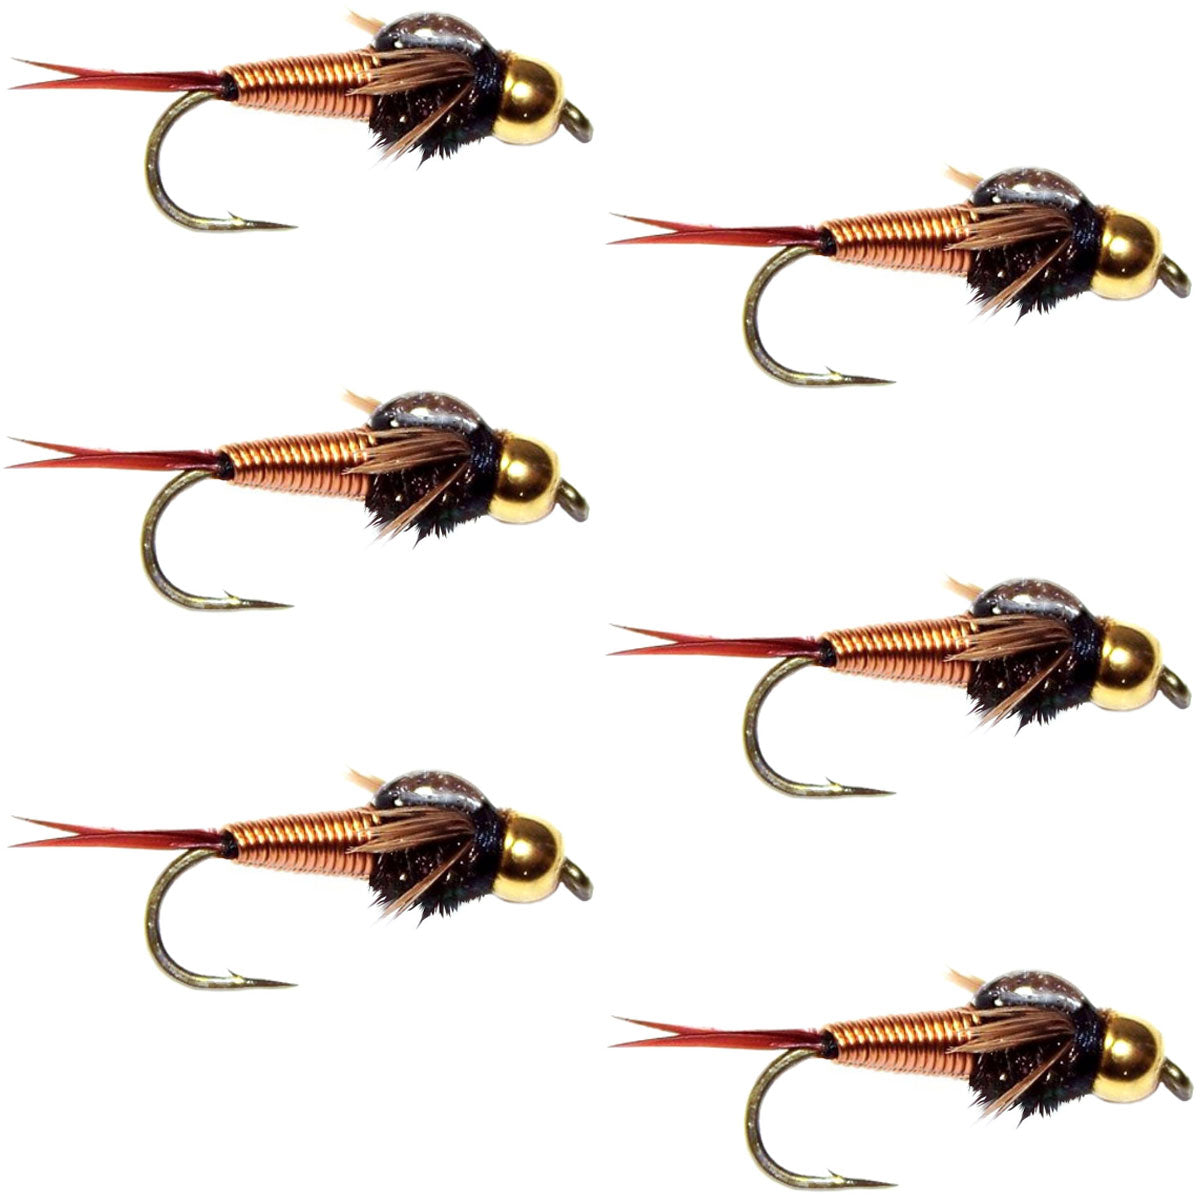 Tungsten Bead Head Copper John Nymph Fly Fishing Flies - Set of 6 Flies Hook Size 16